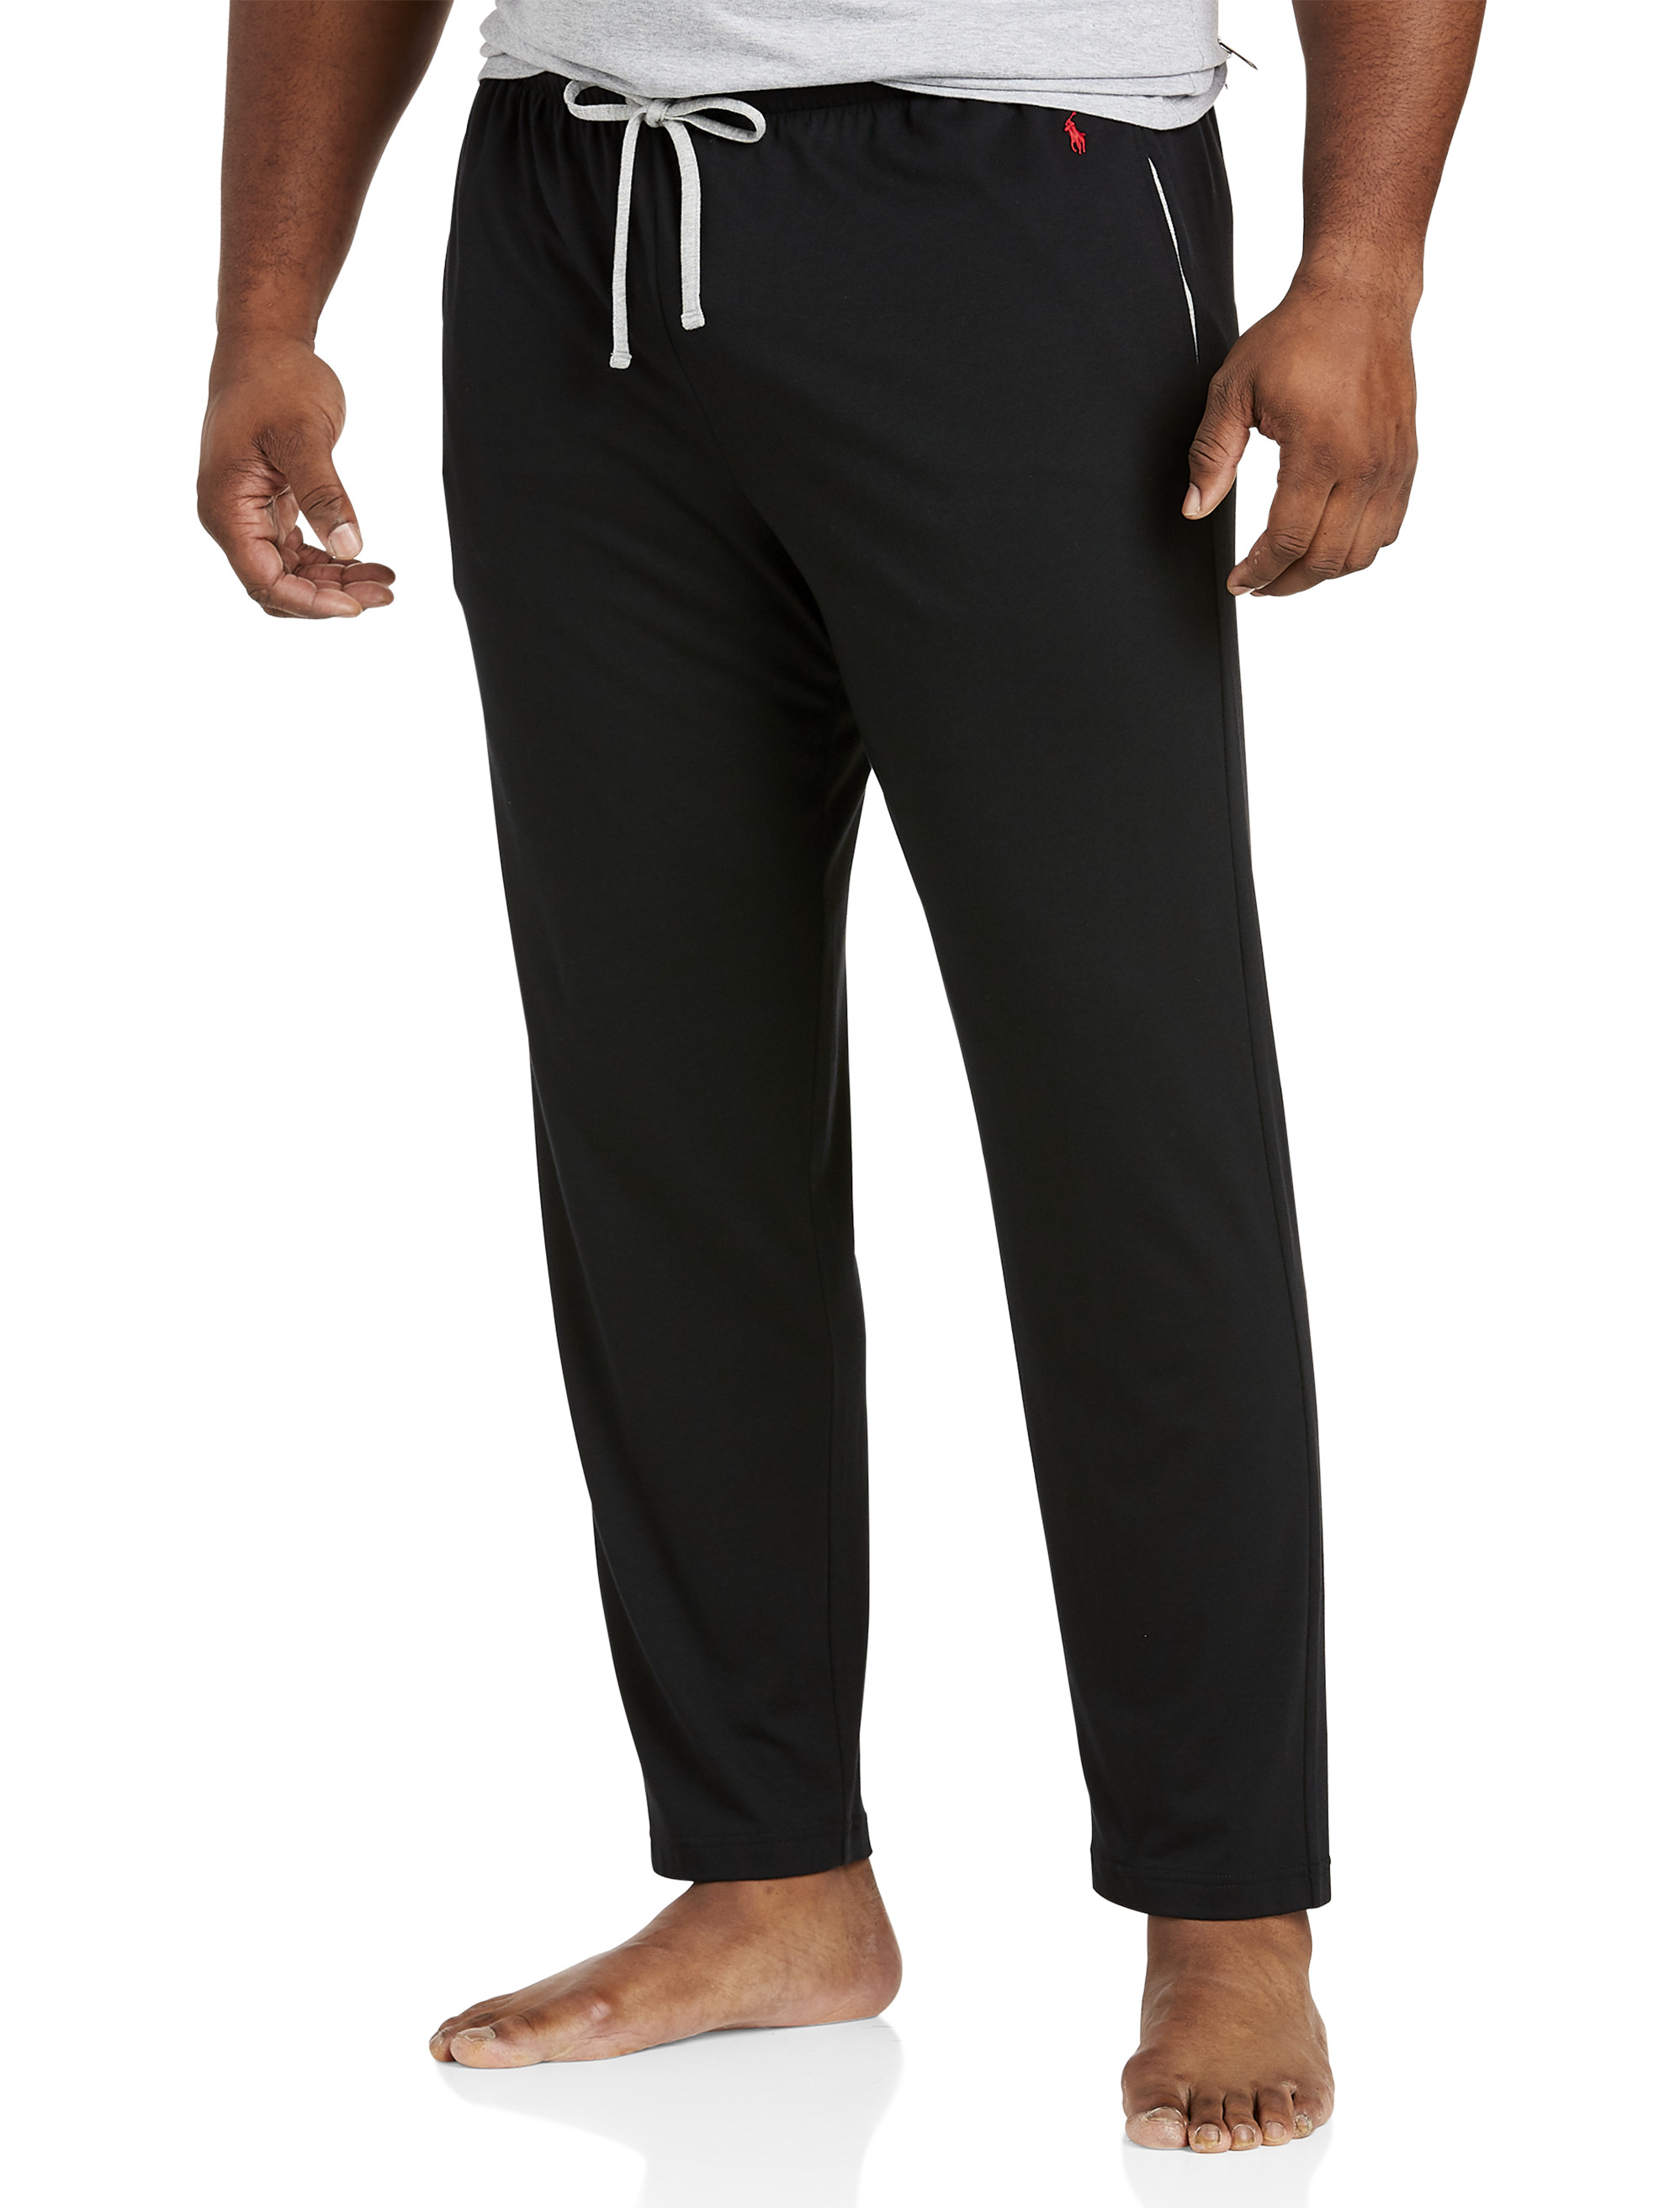 Big + Tall | Polo Ralph Lauren Supreme Comfort Sleep Pants | DXL